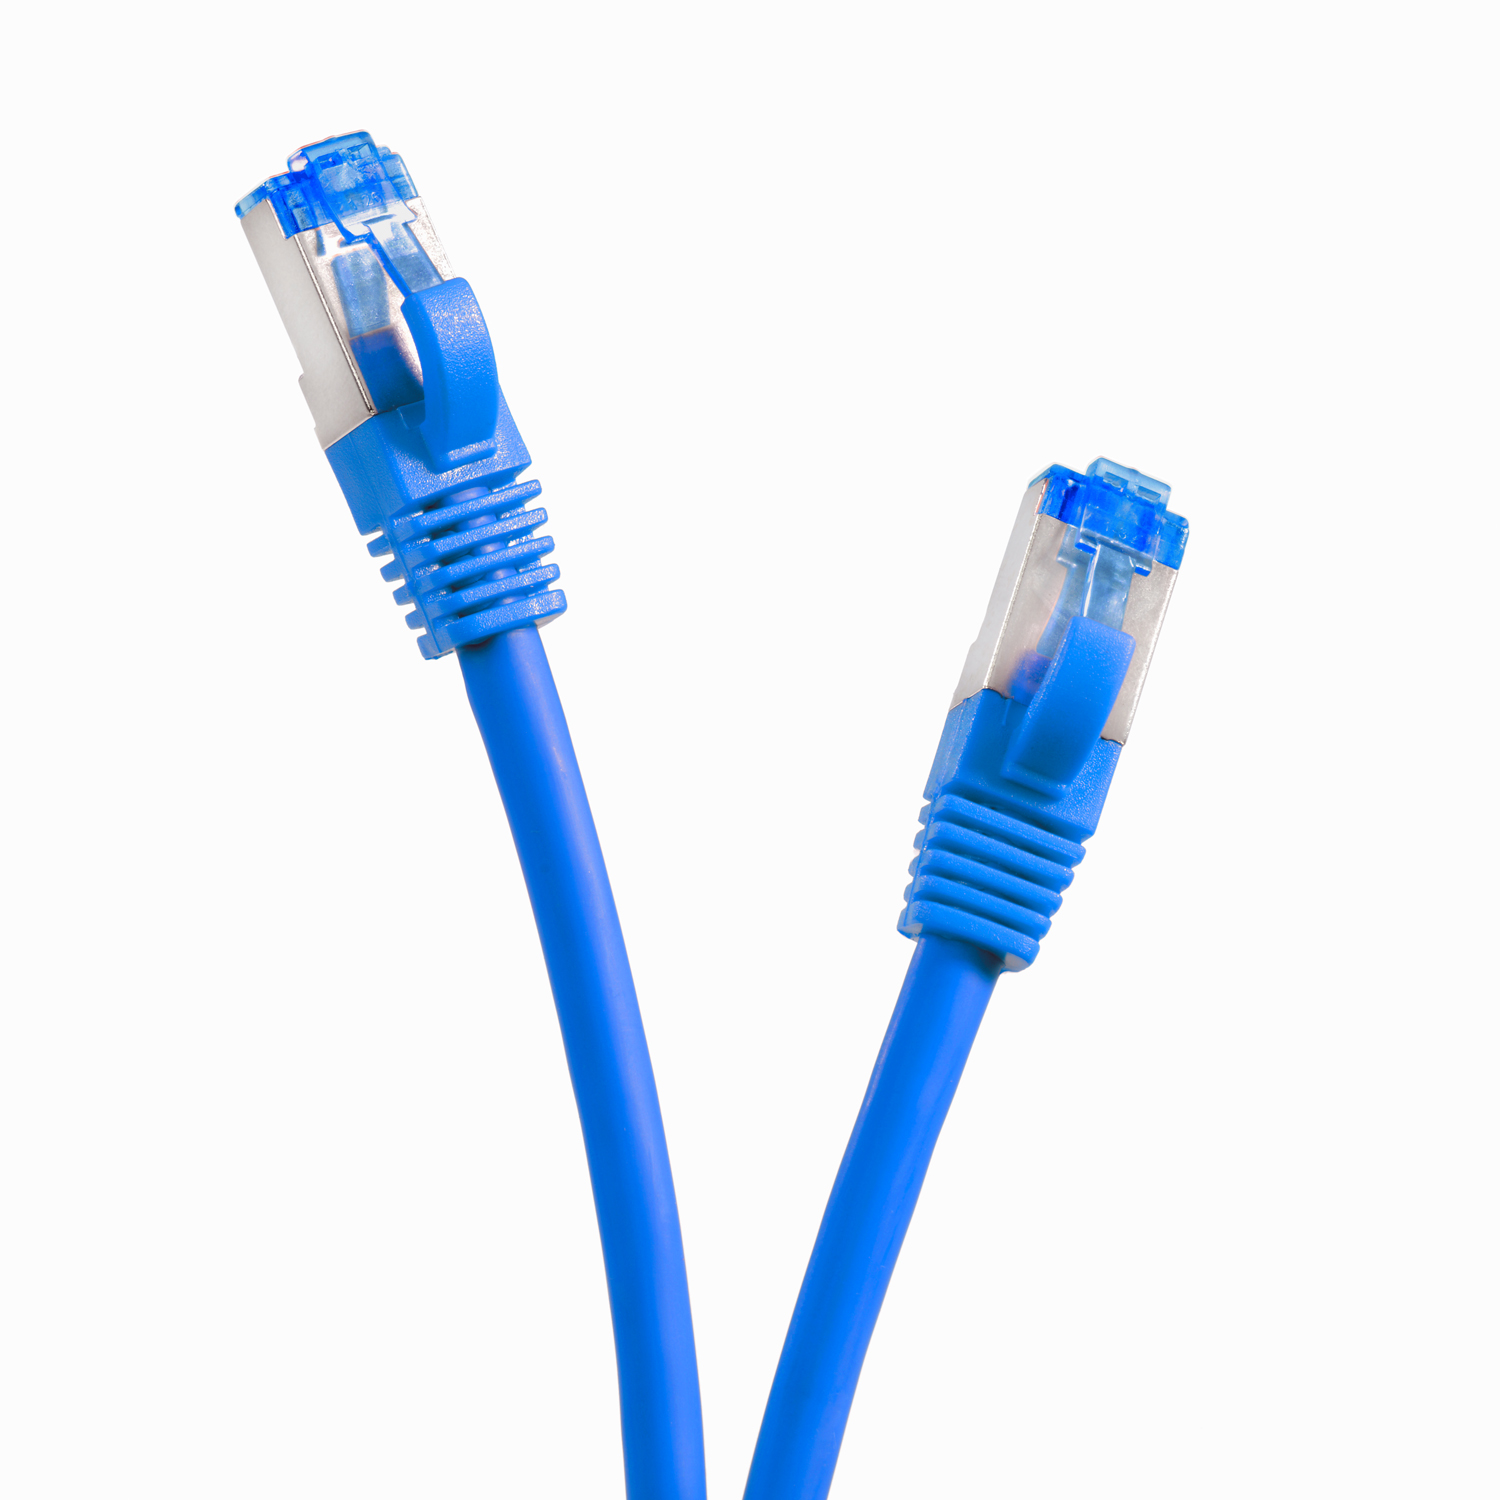 Patchkabel TPFNET 10er Netzwerkkabel S/FTP 2m 10GBit, 2 blau, Netzwerkkabel, Pack m /